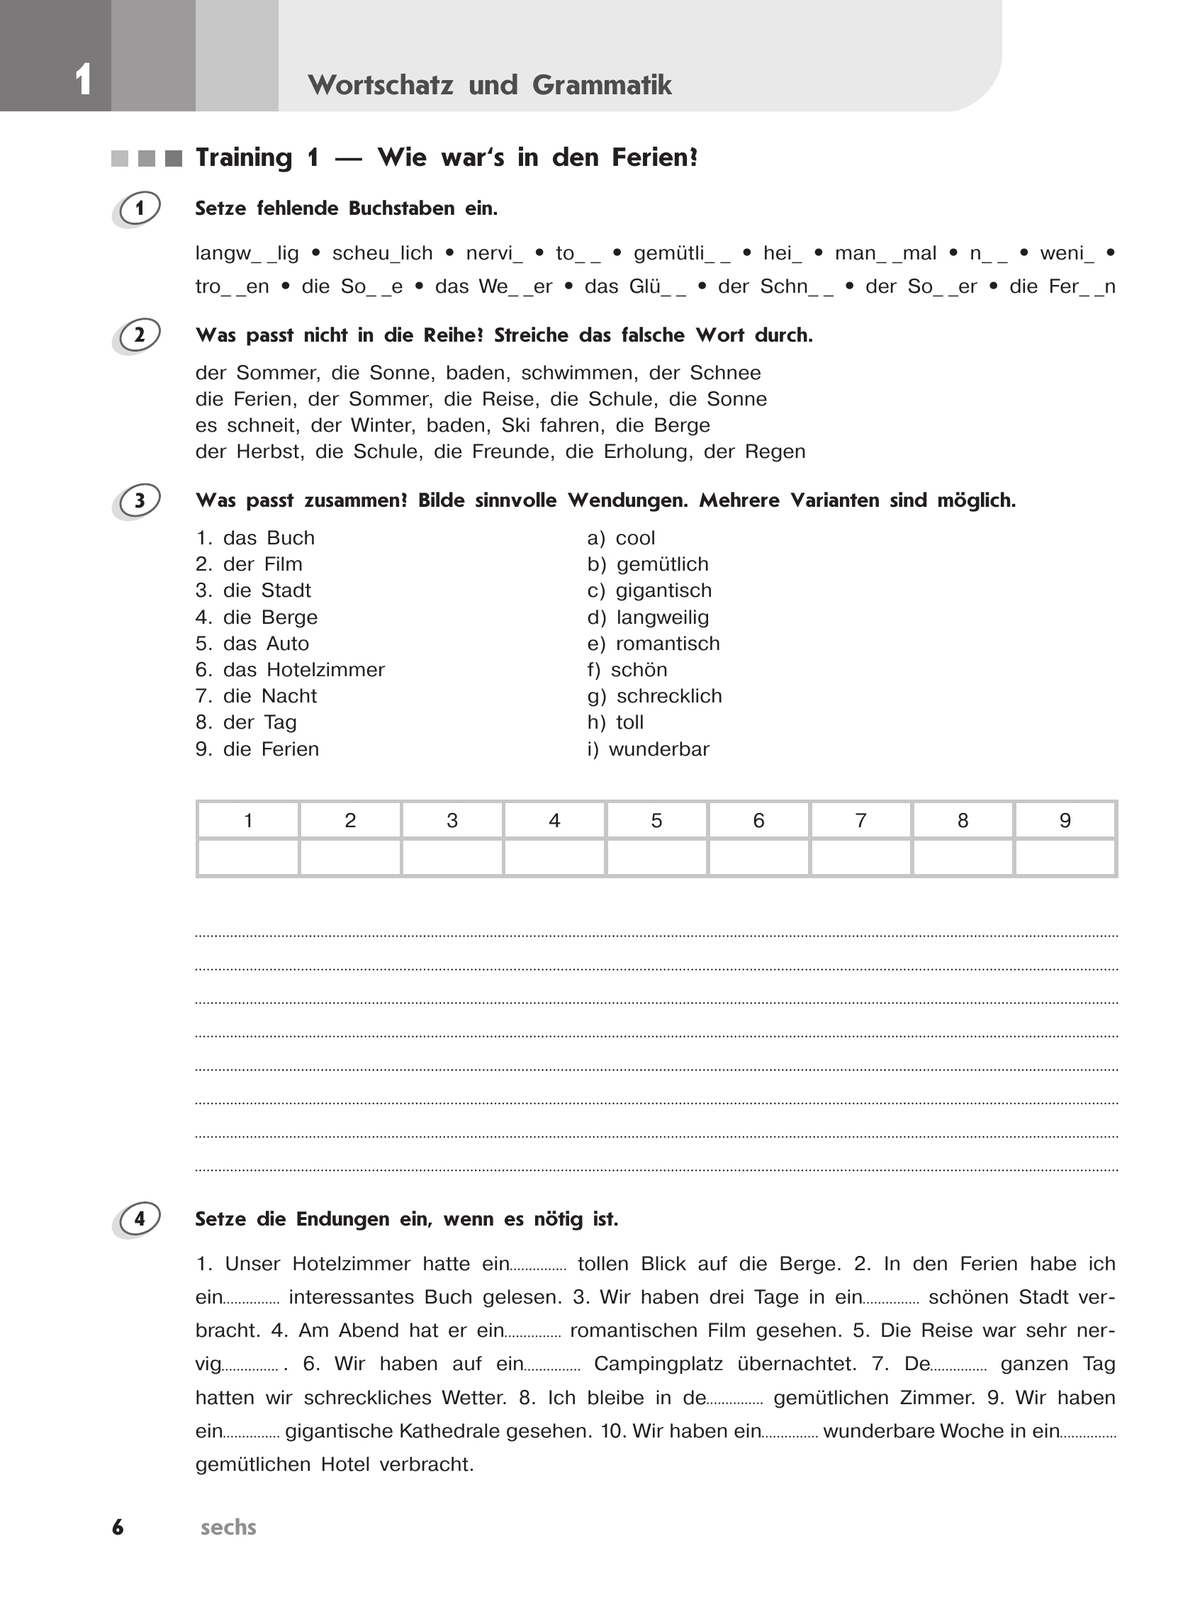 Немецкий язык. Второй иностранный язык. Лексика и грамматика. Сборник упражнений. 7 класс 8